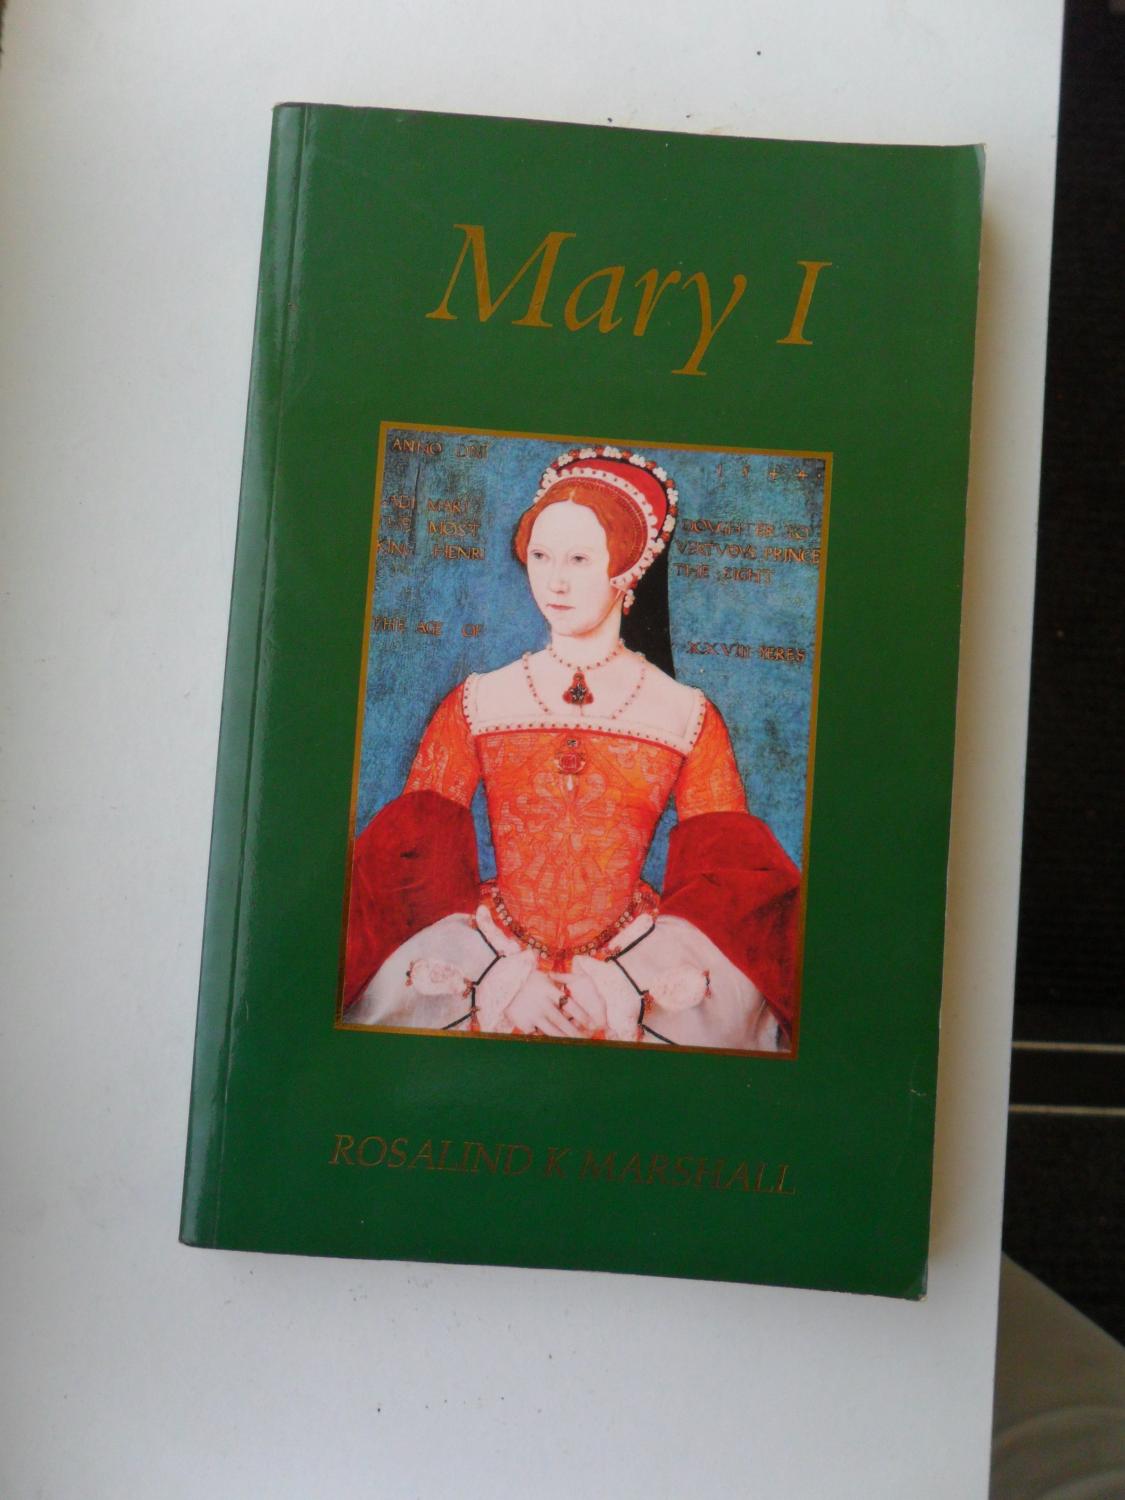 Mary I